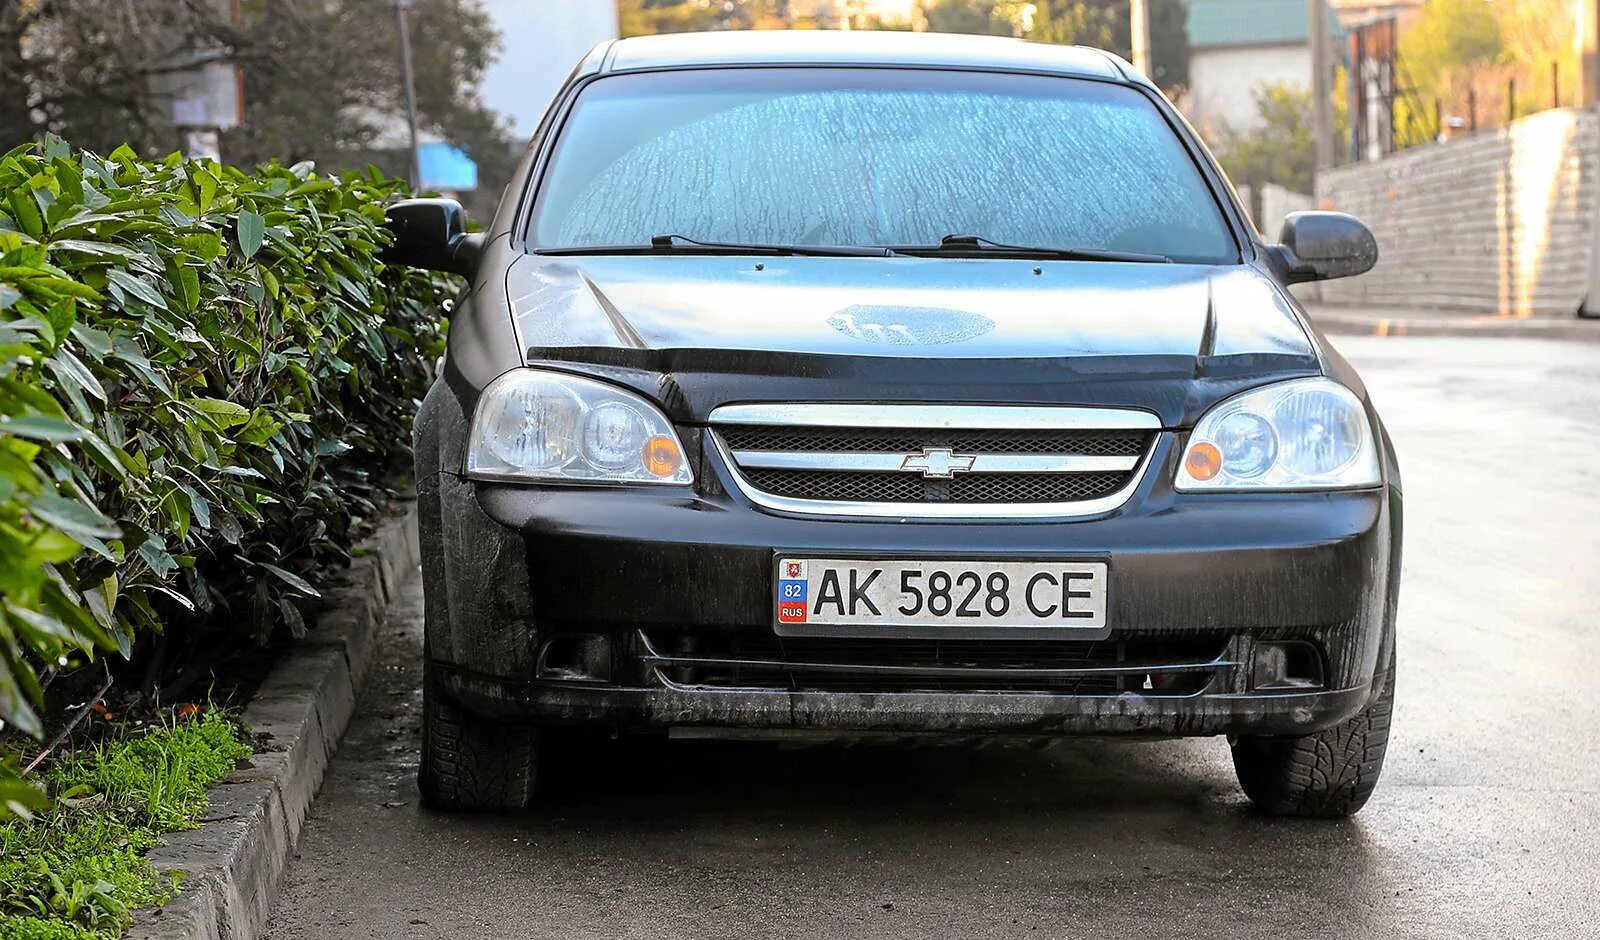 Номера сум. Украинские номера автомобилей. Украинские номера автомобилей фото. Автомобили с украинскими номерами зимой. Виды номерных знаков Украины.